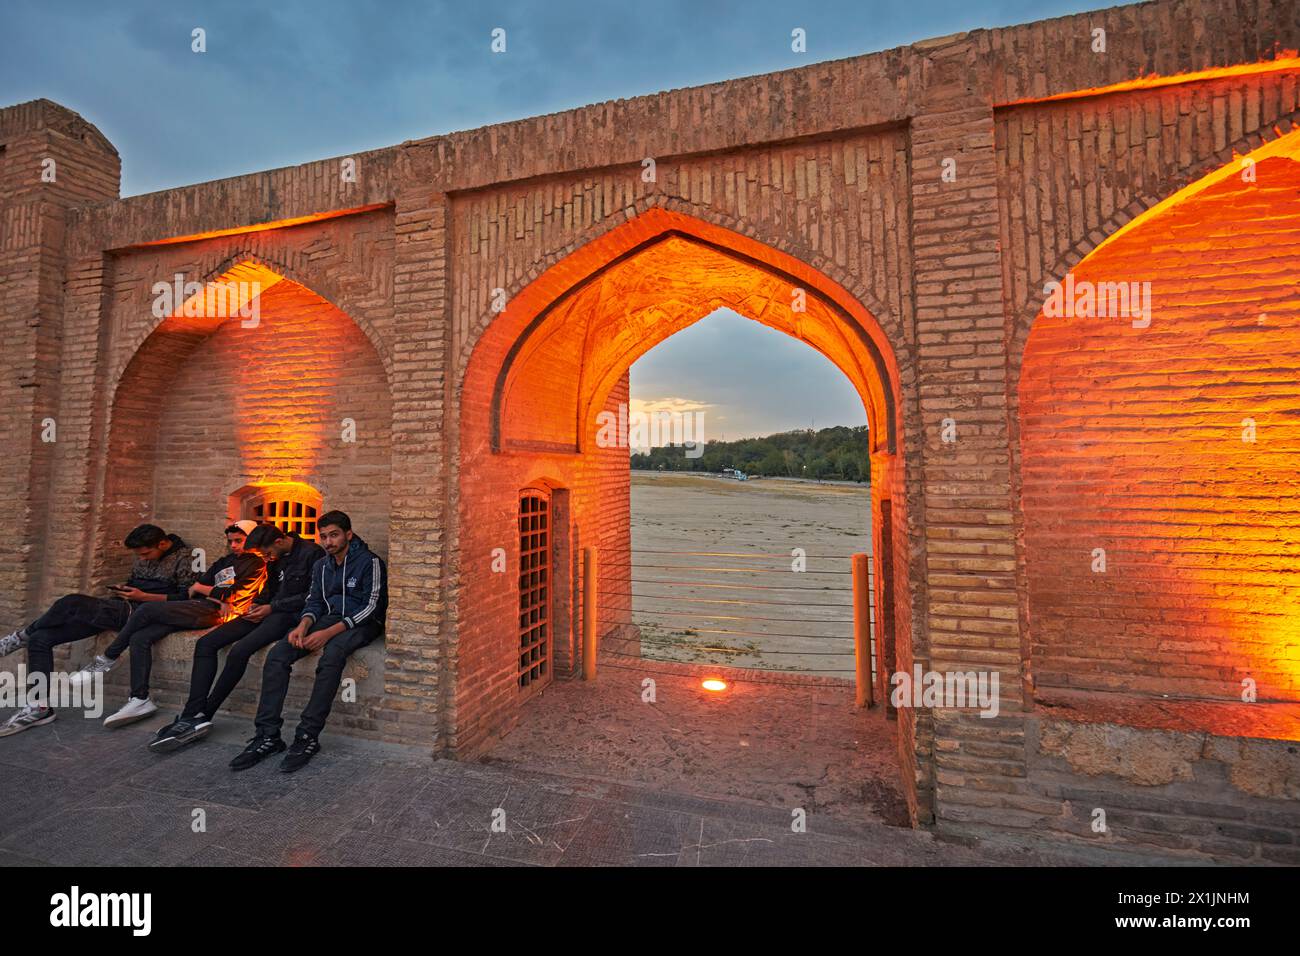 De jeunes Iraniens sont assis sur le pont Allahverdi Khan, alias si-o-se-pol (XVIIe siècle), illuminé au crépuscule. Ispahan, Iran. Banque D'Images